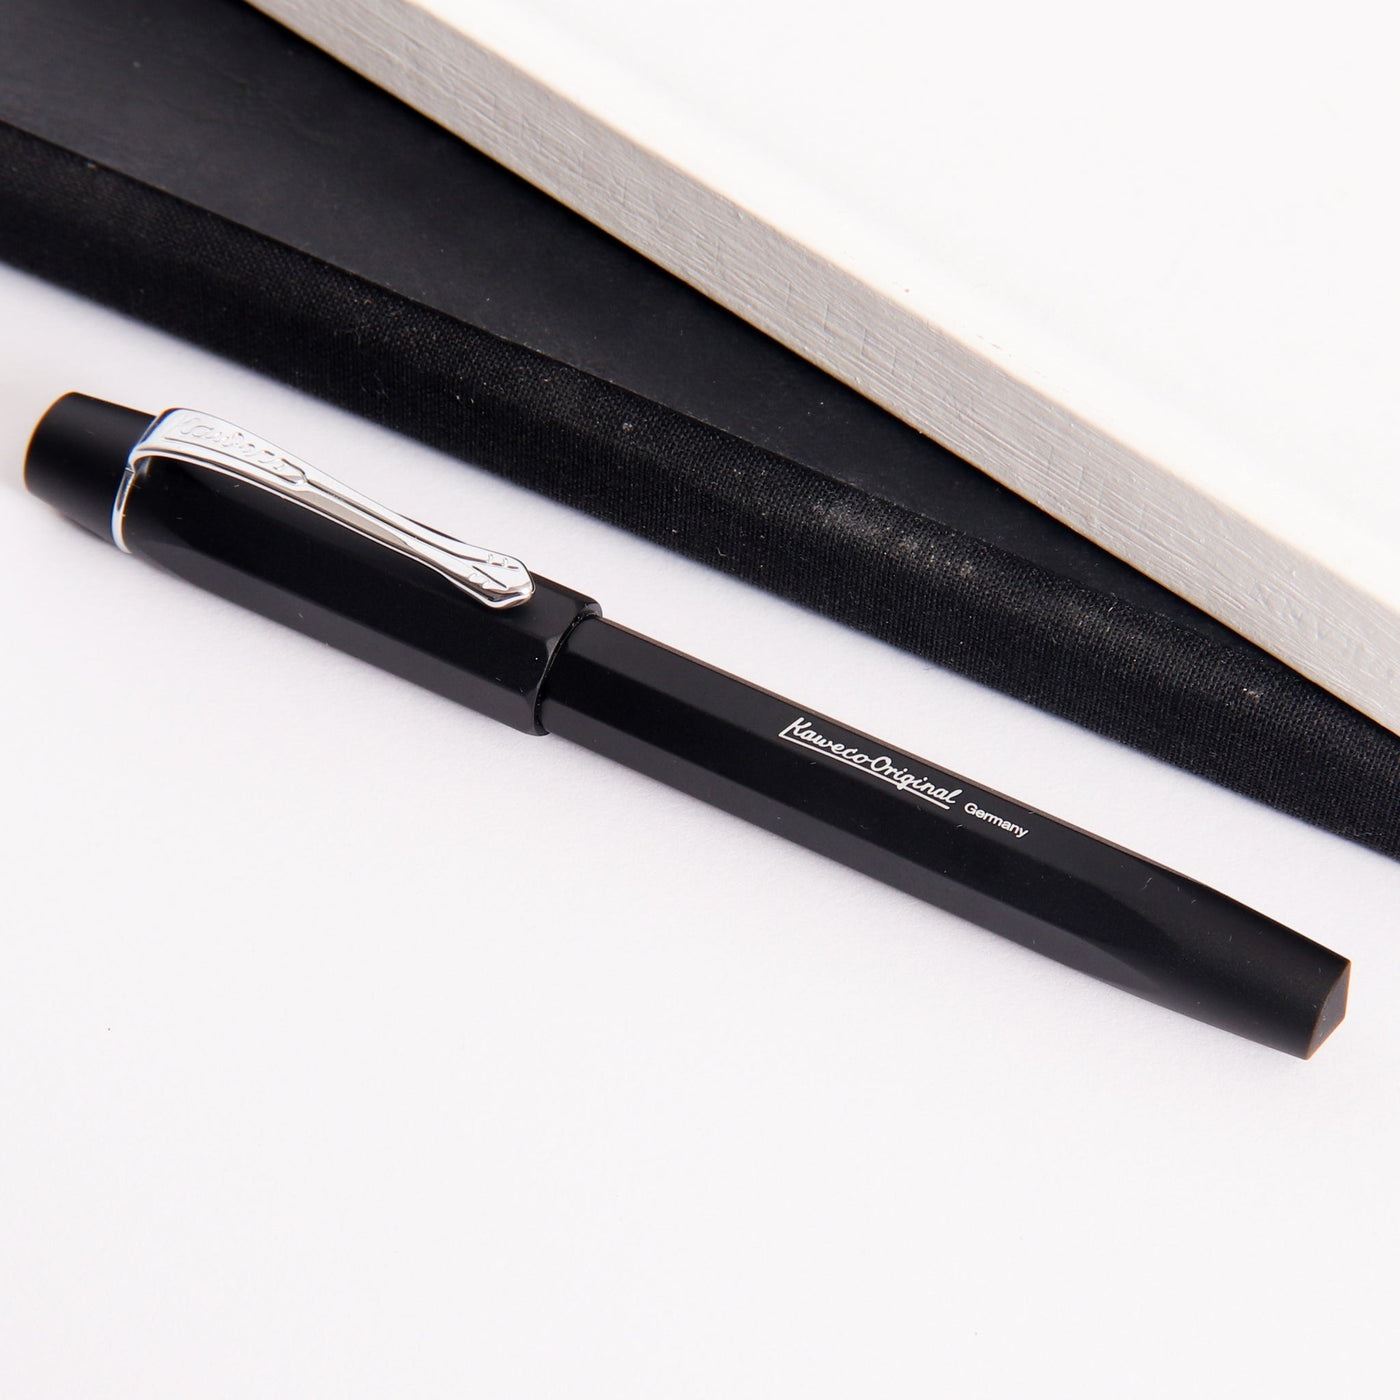 Kaweco Original penna stilografica black 060 - All Pens, kaweco